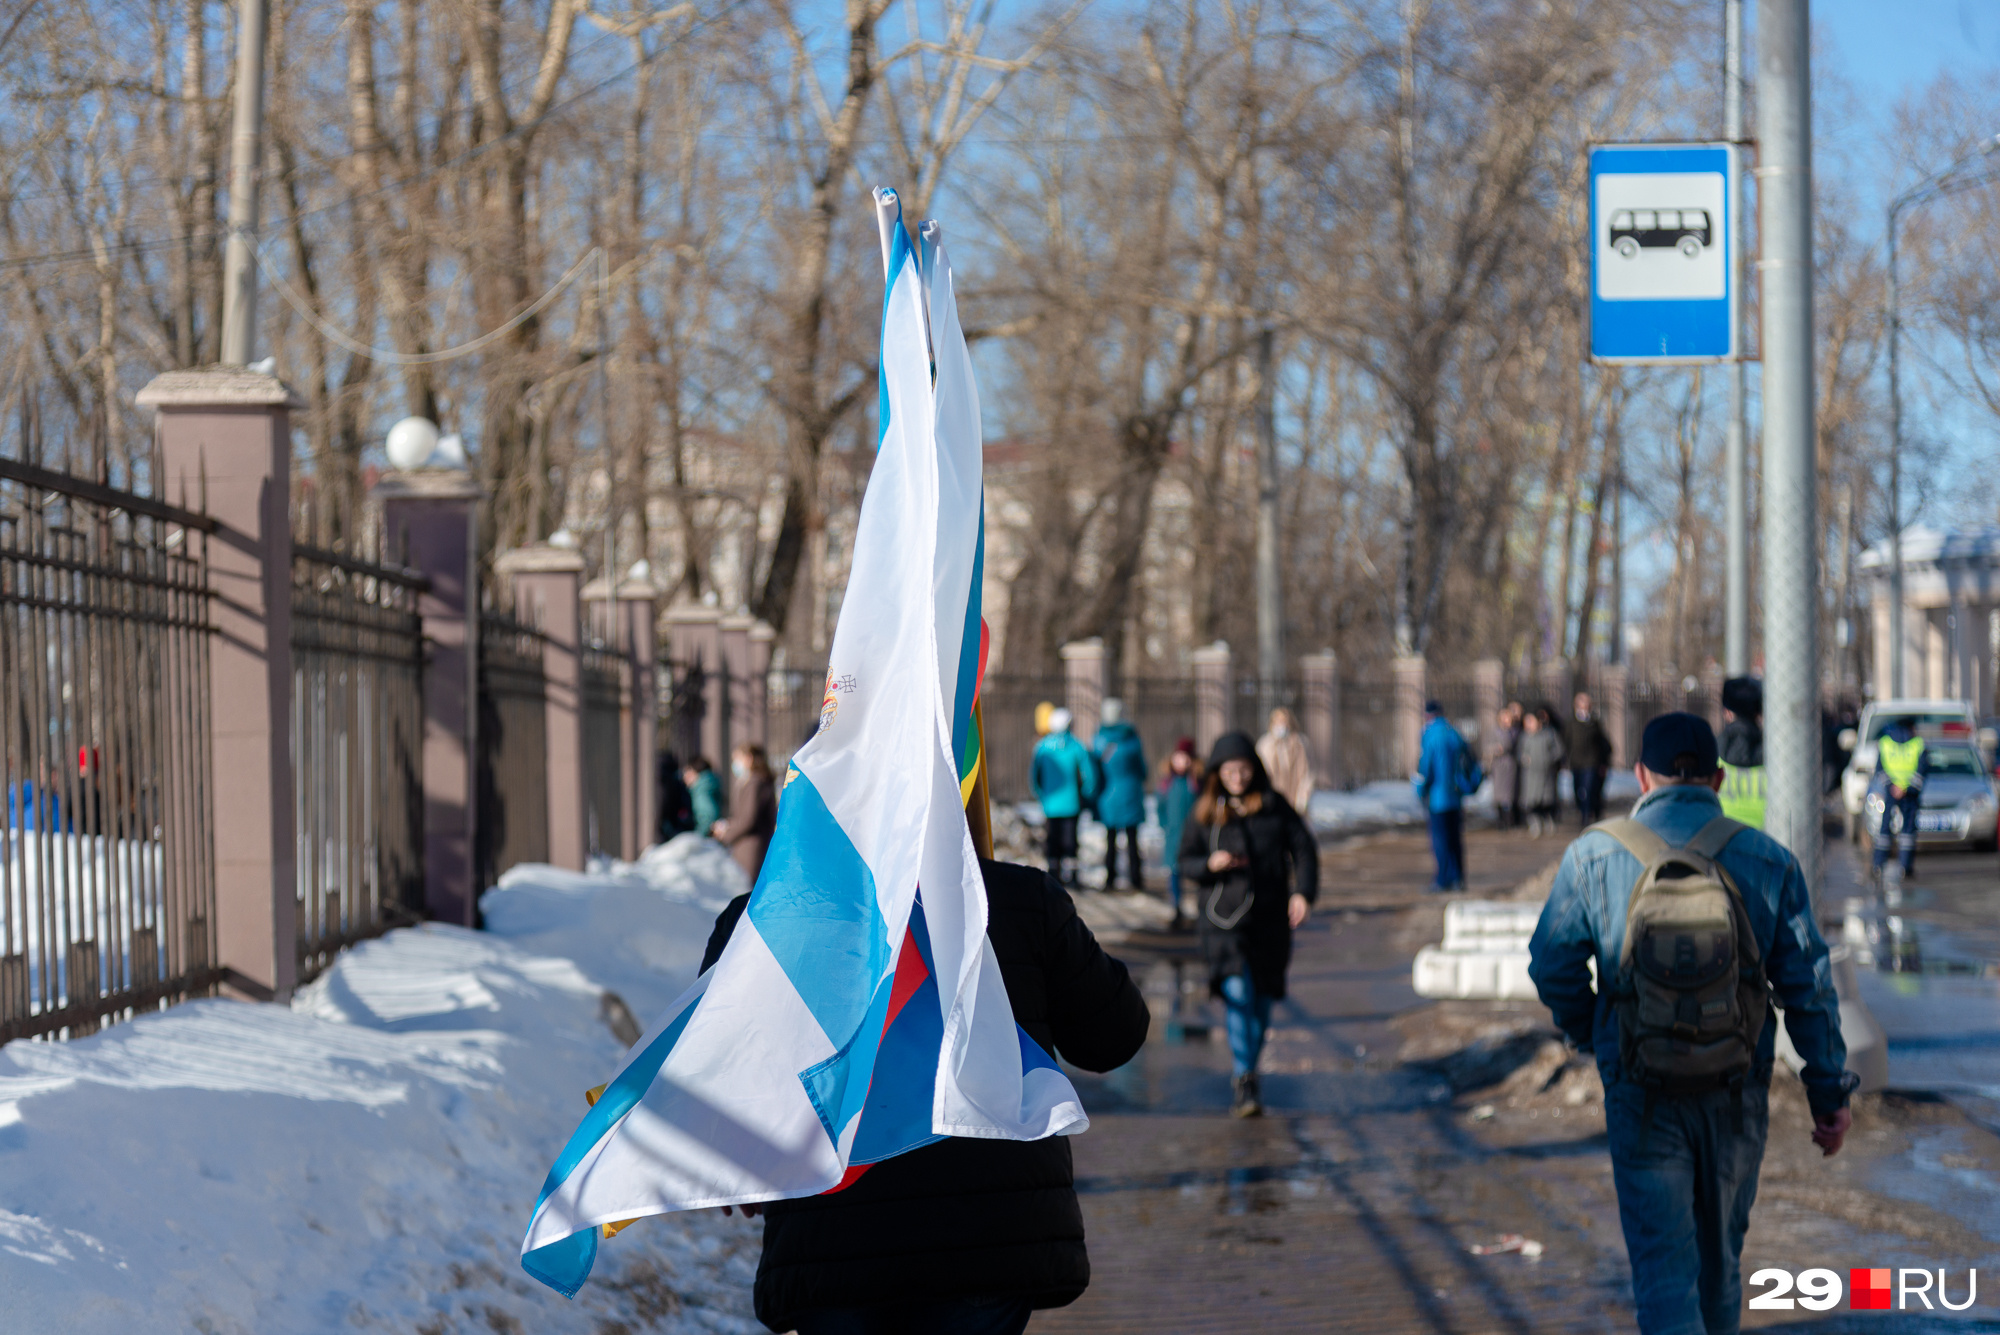 Еще один человек с флагом, на этот раз  Архангельской области